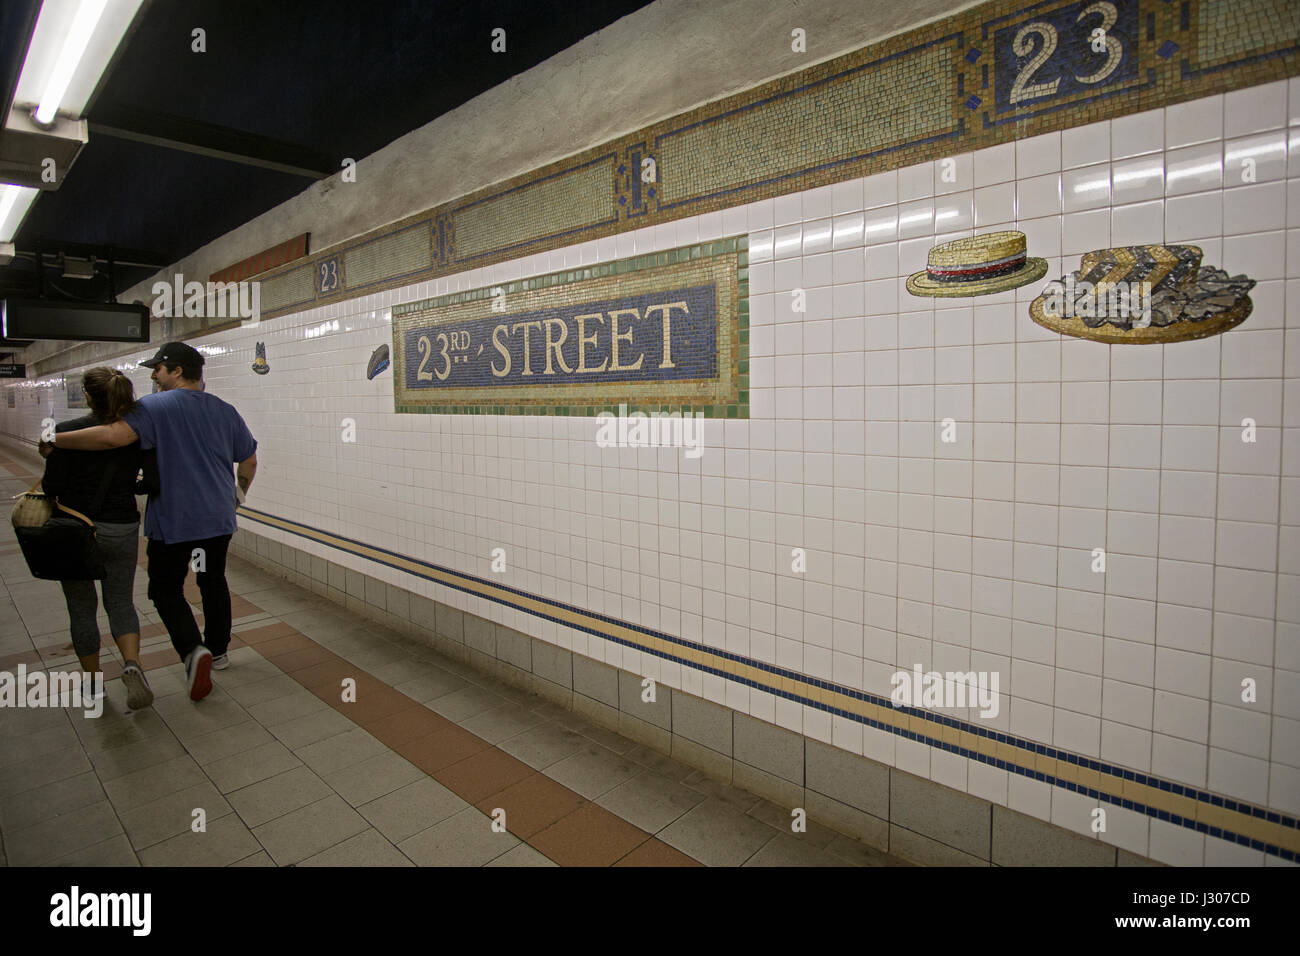 Arte presso la 23rd Street n, q e r il treno alla metropolitana piattaforma in Manhattan, New York City. Foto Stock